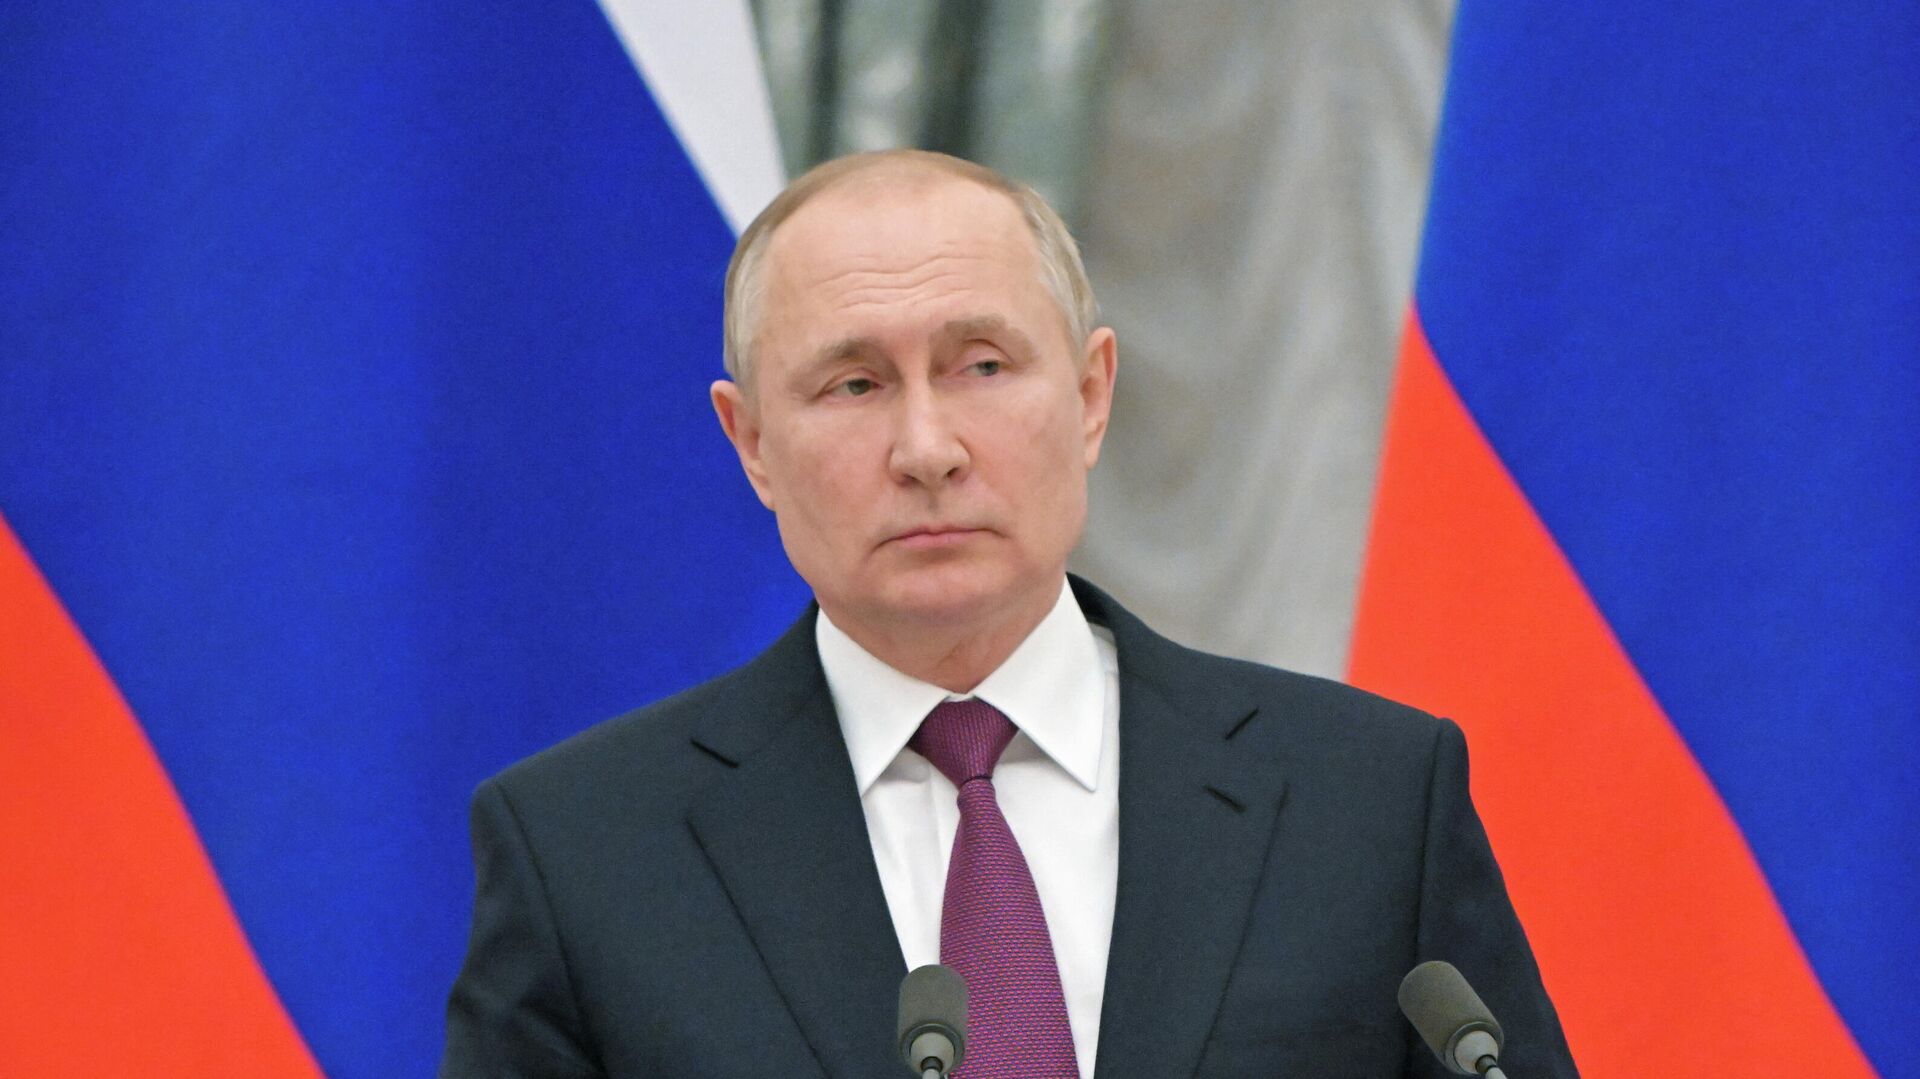  Rusiya prezidenti Vladimir Putin  - Sputnik Azərbaycan, 1920, 17.02.2022